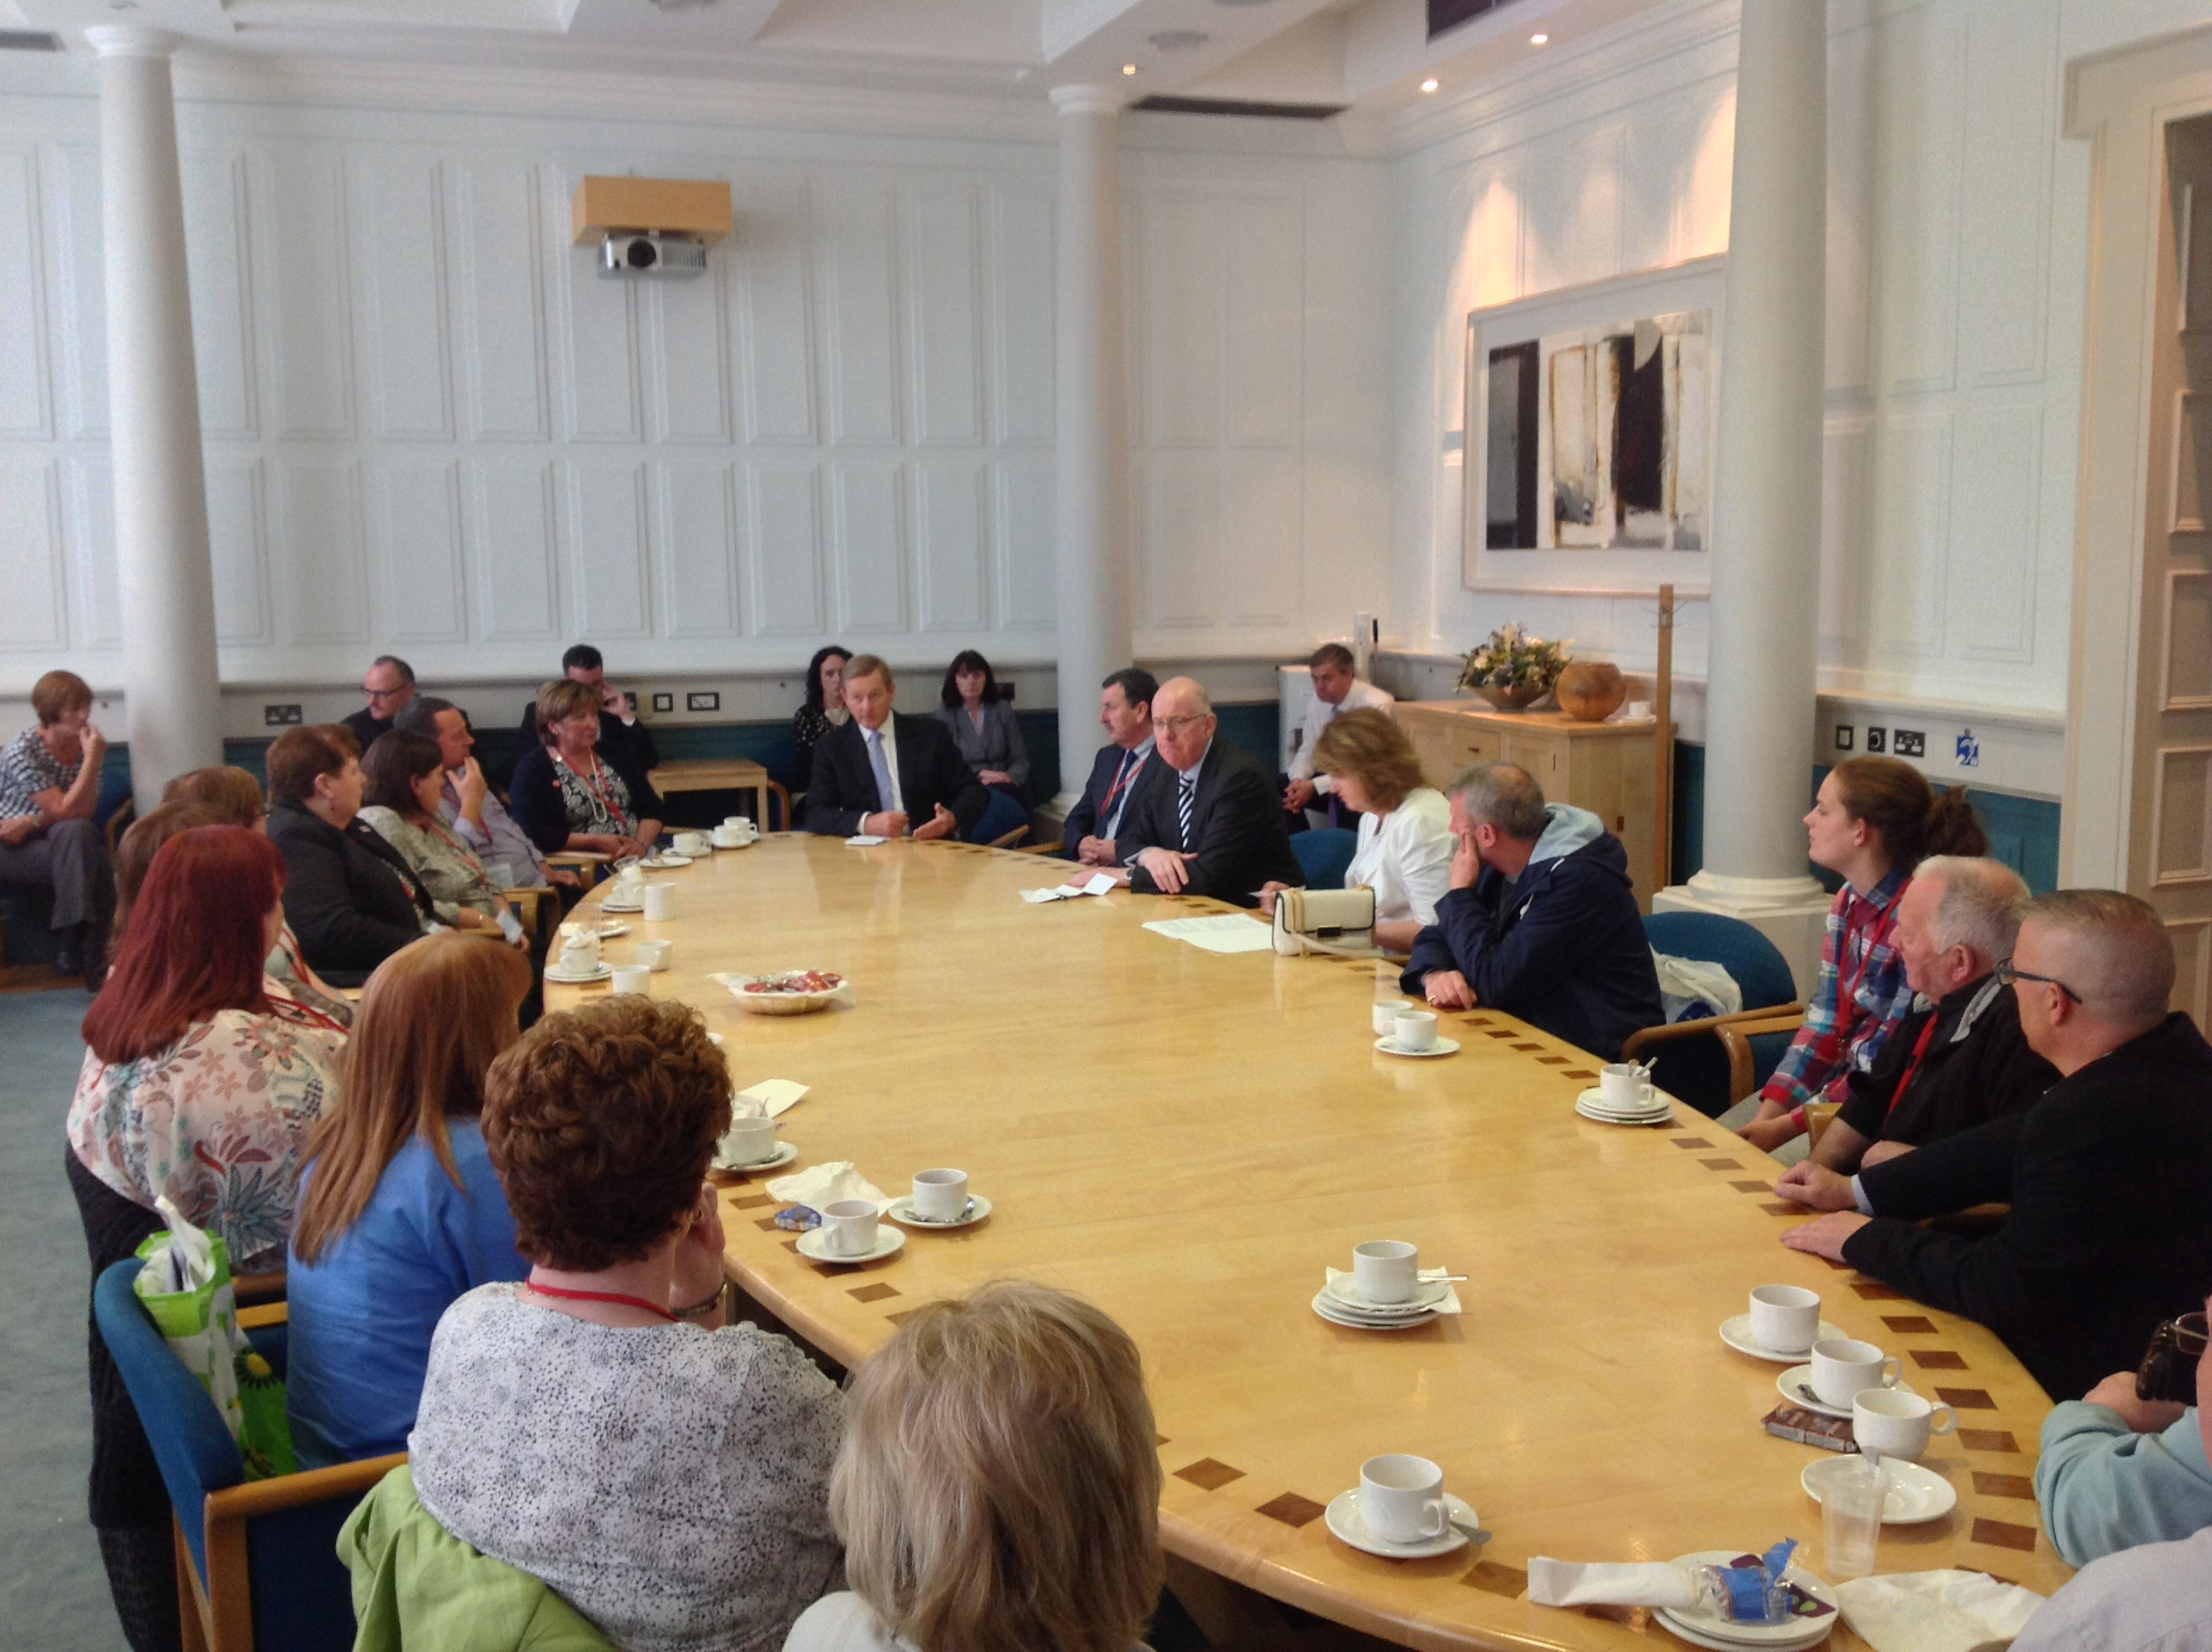 Taoiseach Enda Kenny, Tánaiste Joan Burton and Foreign Affairs Minister Charlie Flanagan around the table with the Ballymurphy families